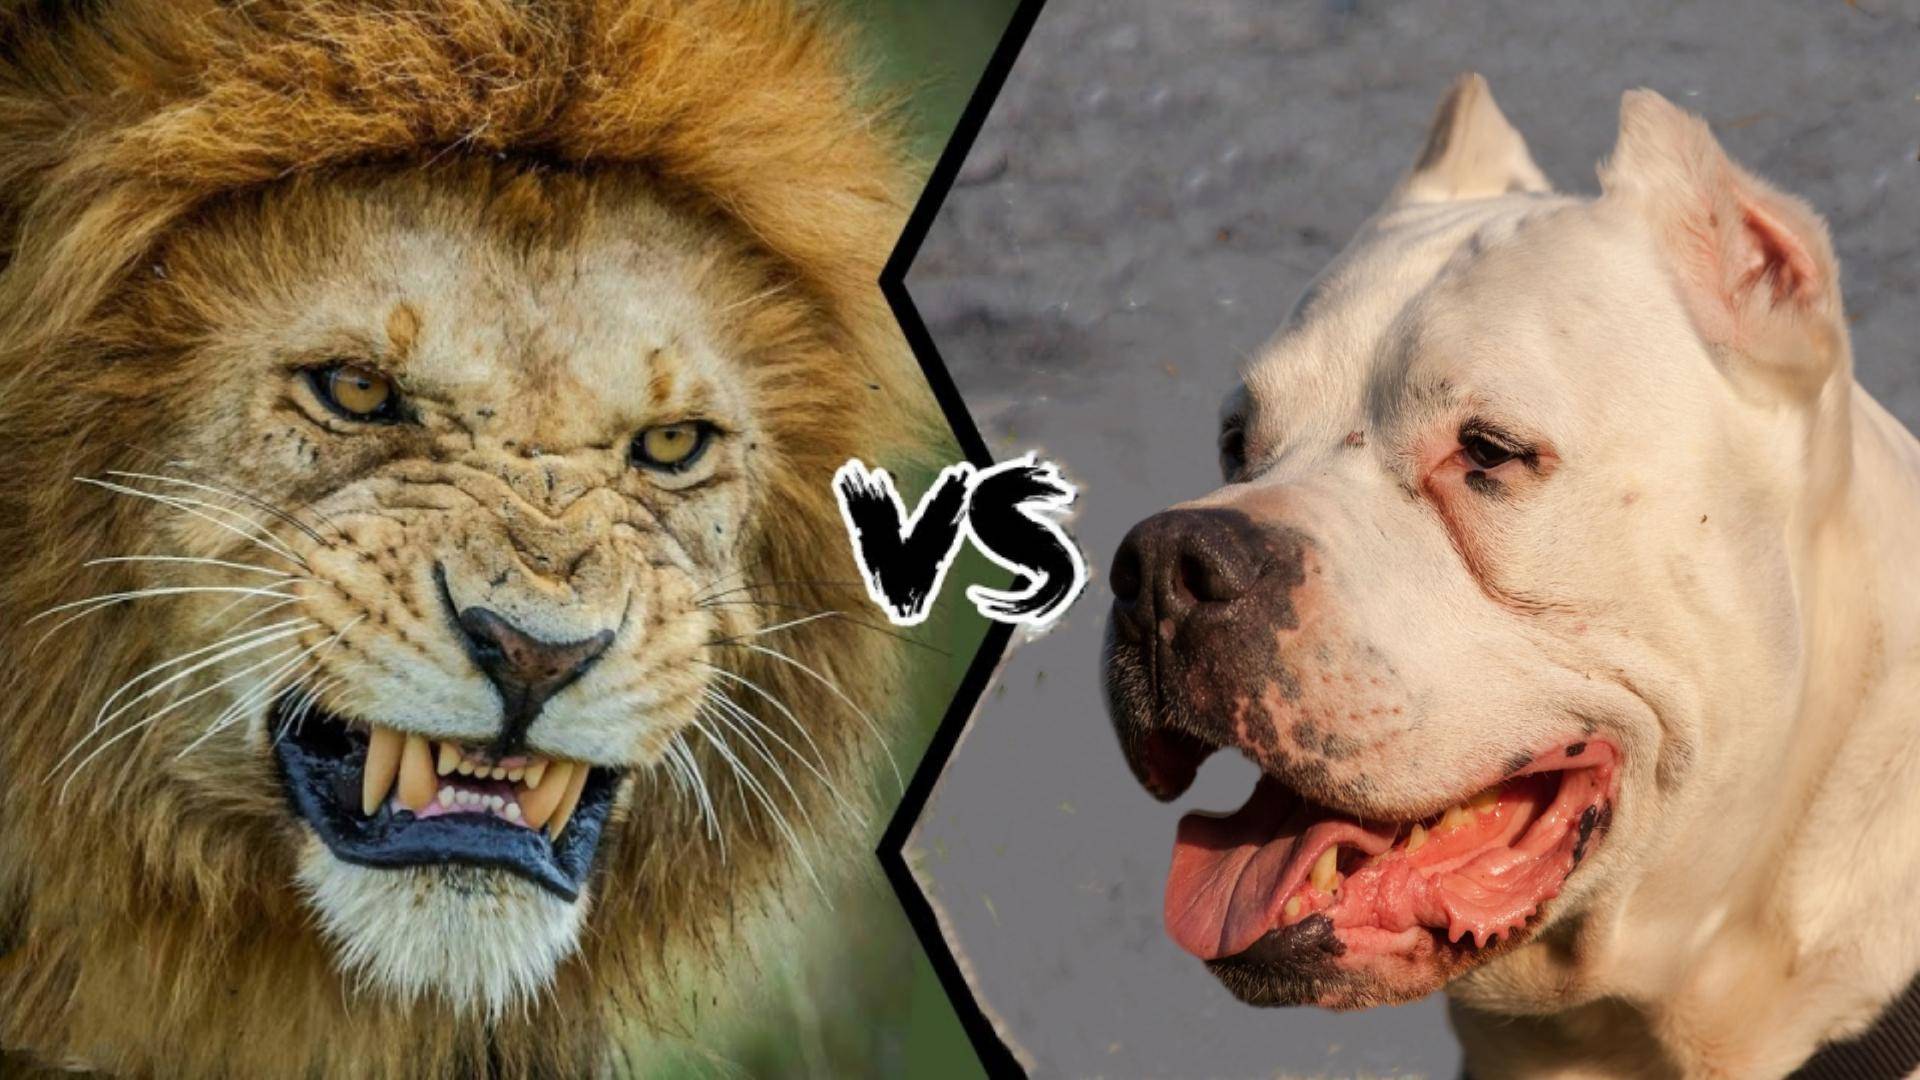 狮子vs杜高犬,若猫科一哥和犬科二弟单挑,谁会笑到最后呢?